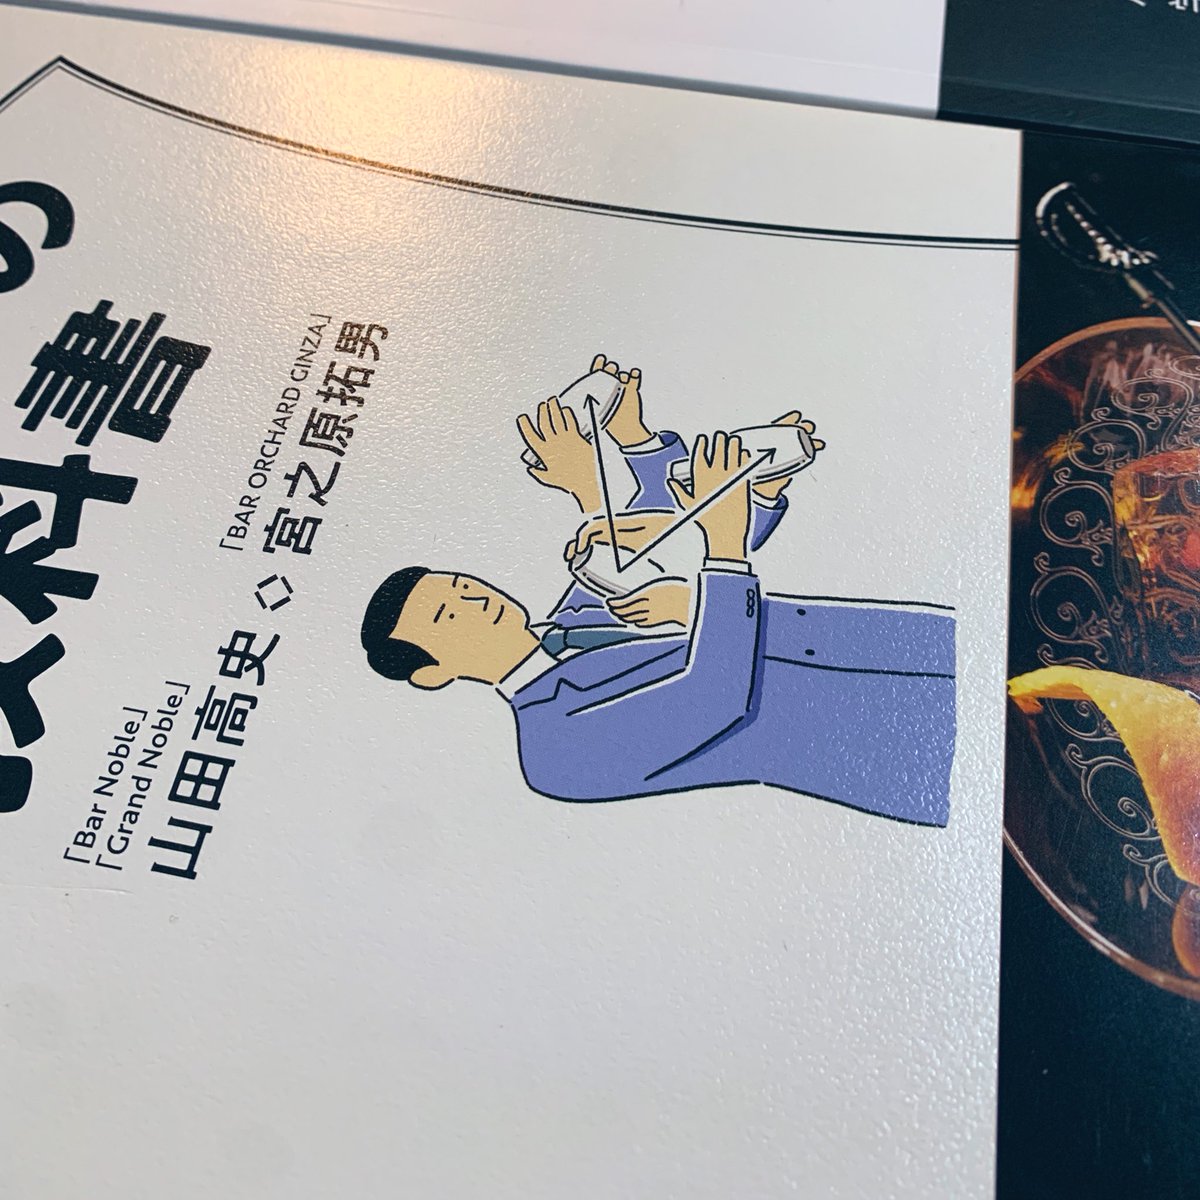 『カクテルの教科書』台湾版に続き、中国版(画像中央)のお見本をいただきました。デザイン、製本仕様、紙や印刷が三書三様で面白いです。 https://t.co/8l53CQK7Qj 